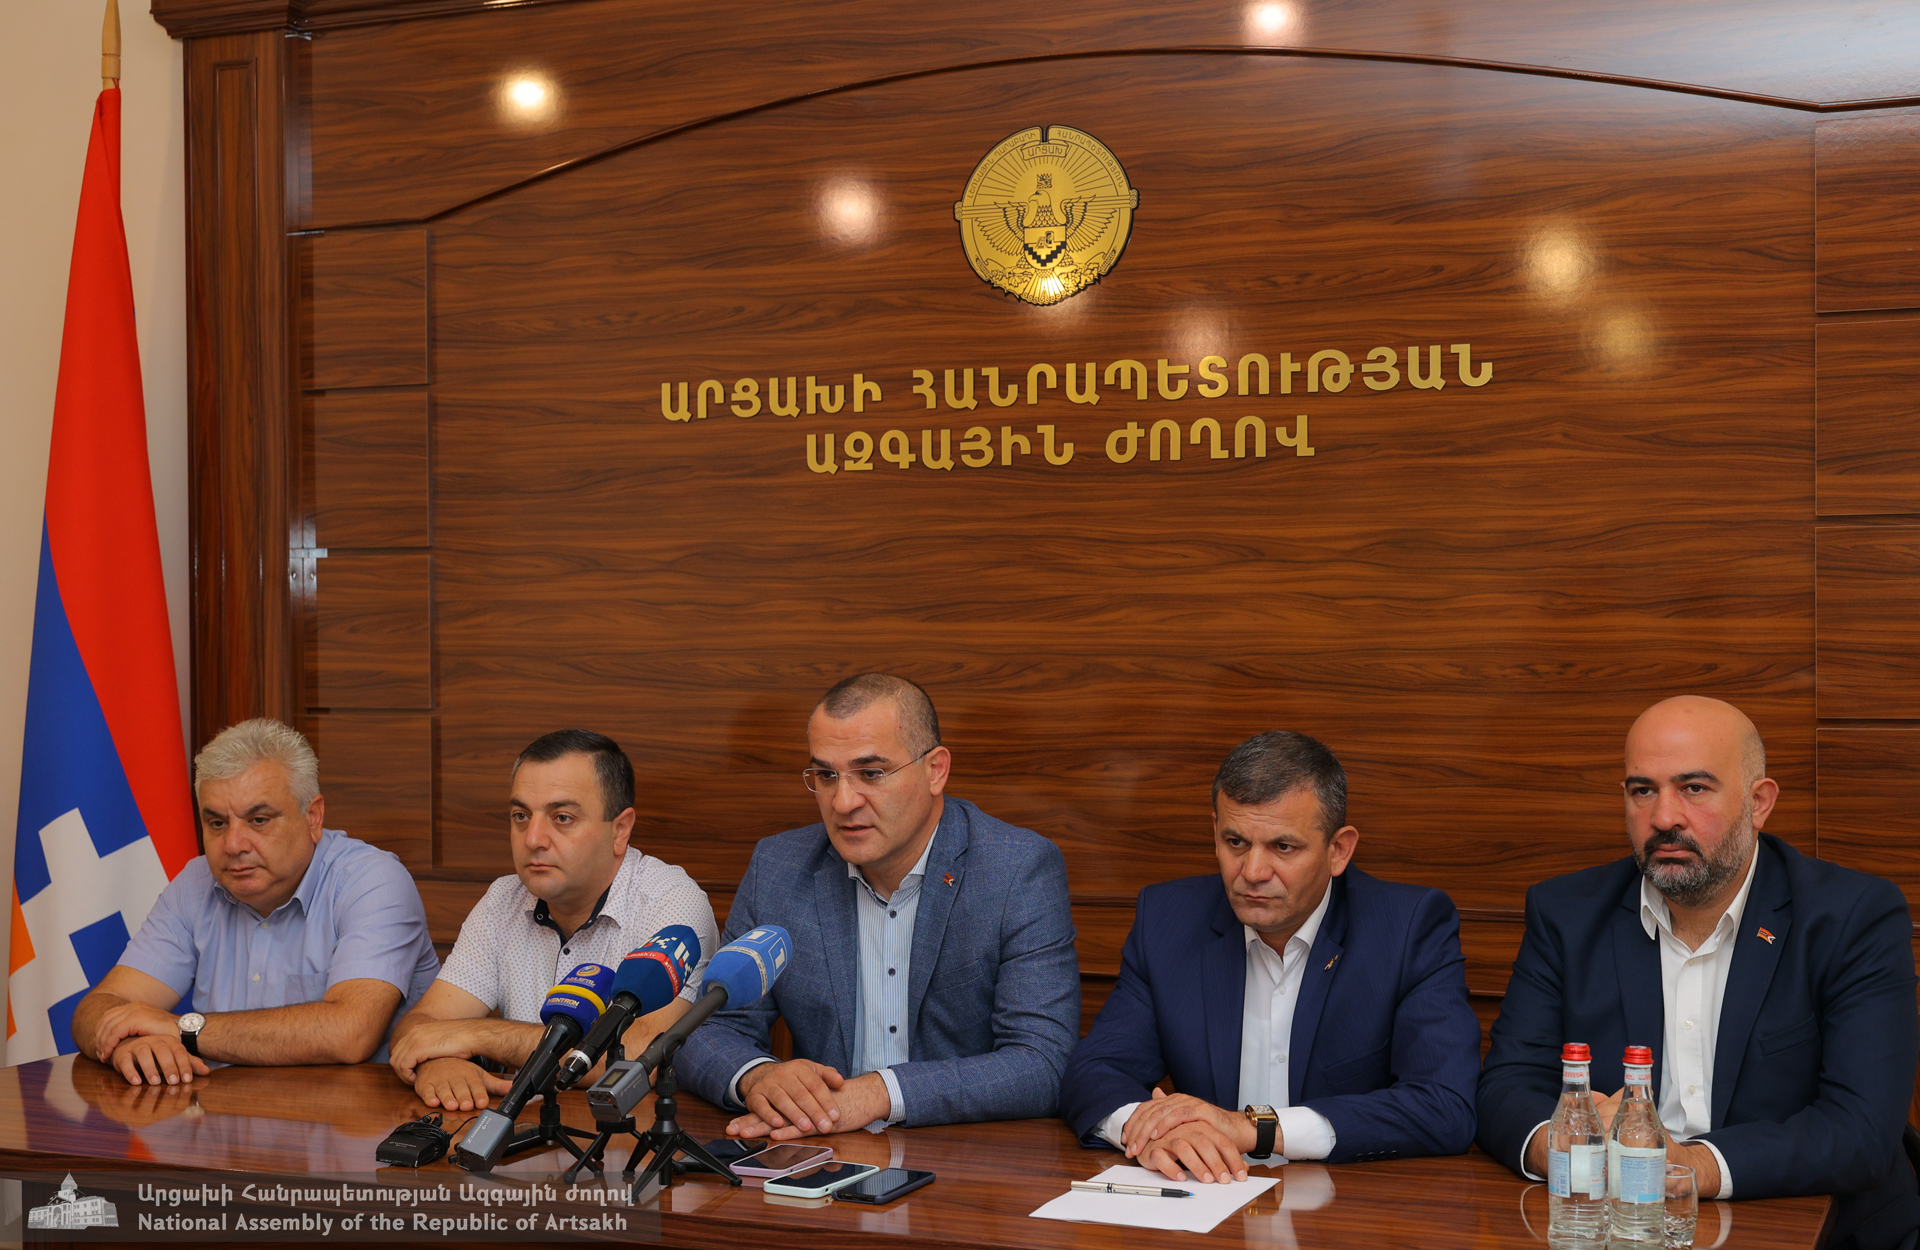 Политсилы НС заверяют: в повестке властей Армении нет какого-либо документа во вред Арцаха